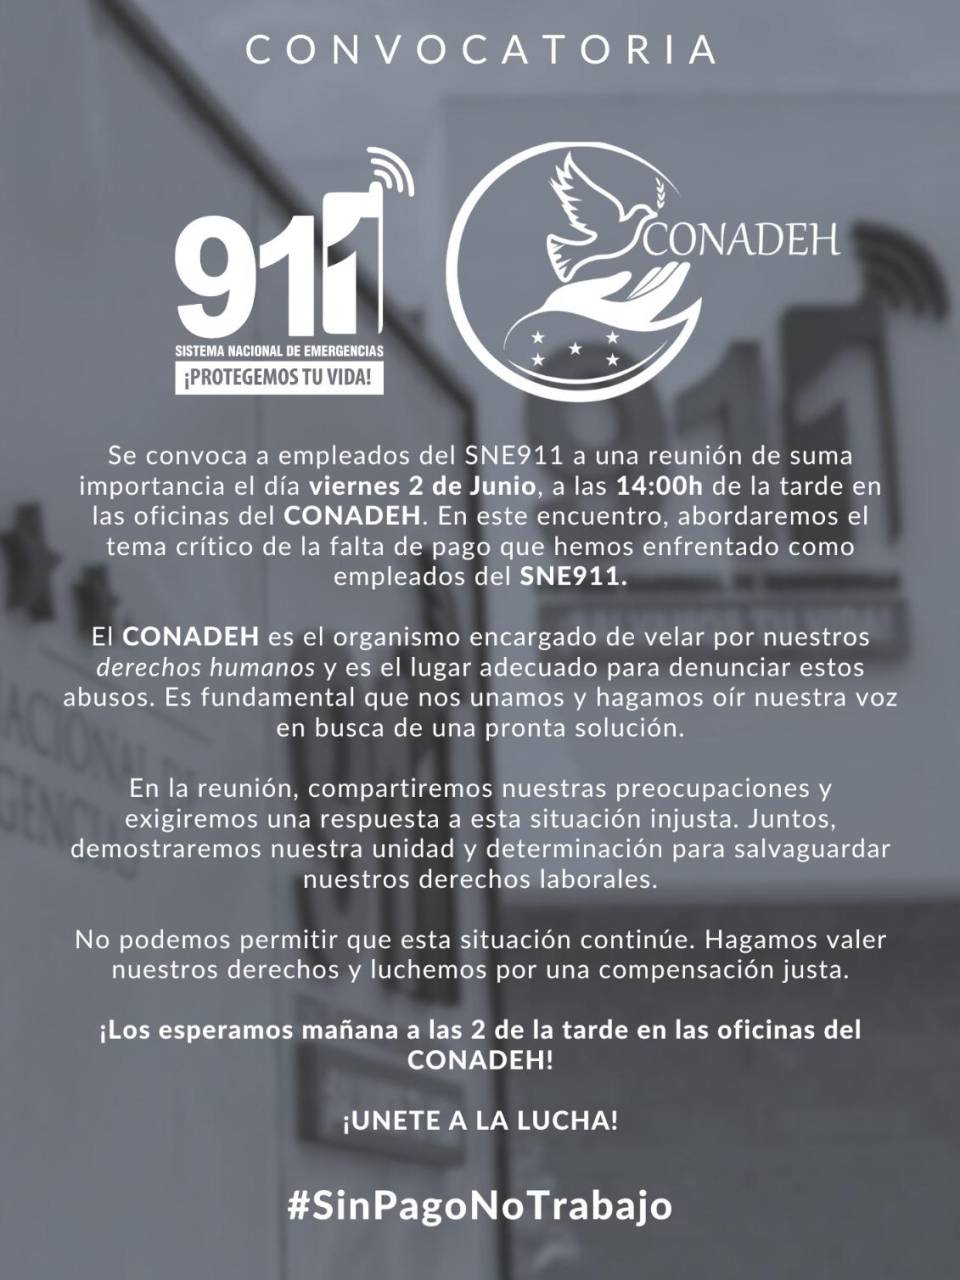 Empleados de 911 convocan a reunión en el Conadeh en demanda de sus salarios